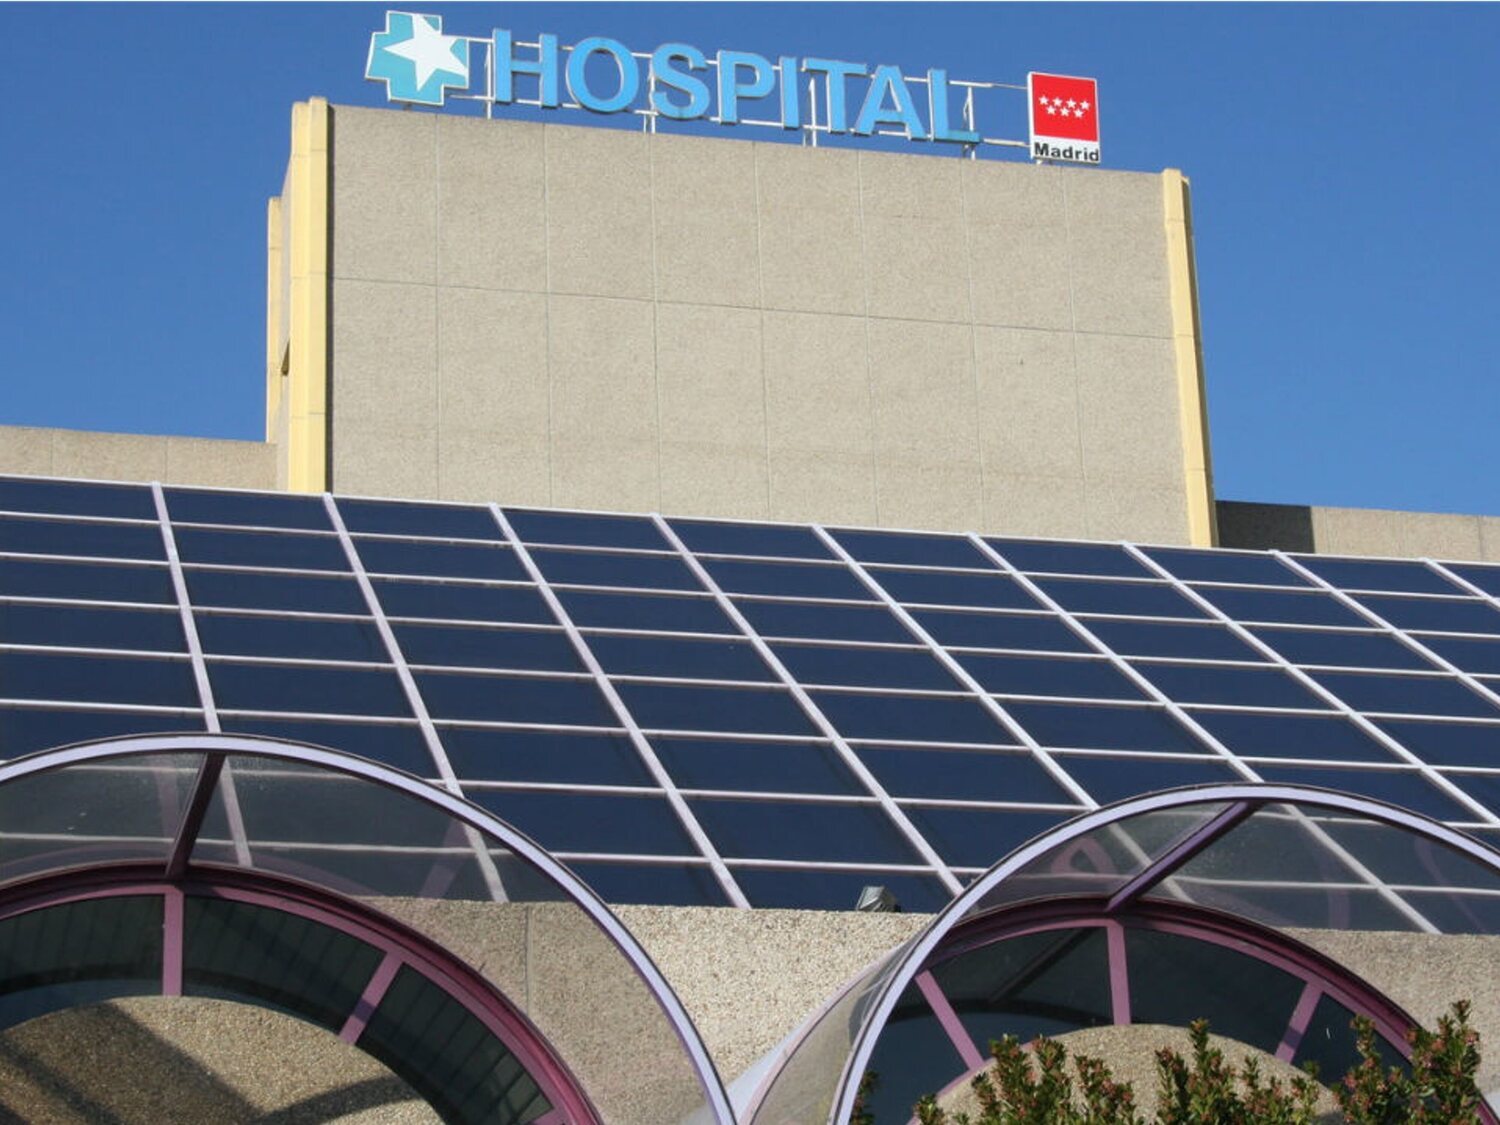 El Hospital de Getafe ordena a sus médicos enviar a los extranjeros sin tarjeta a "centros privados" en los que paguen